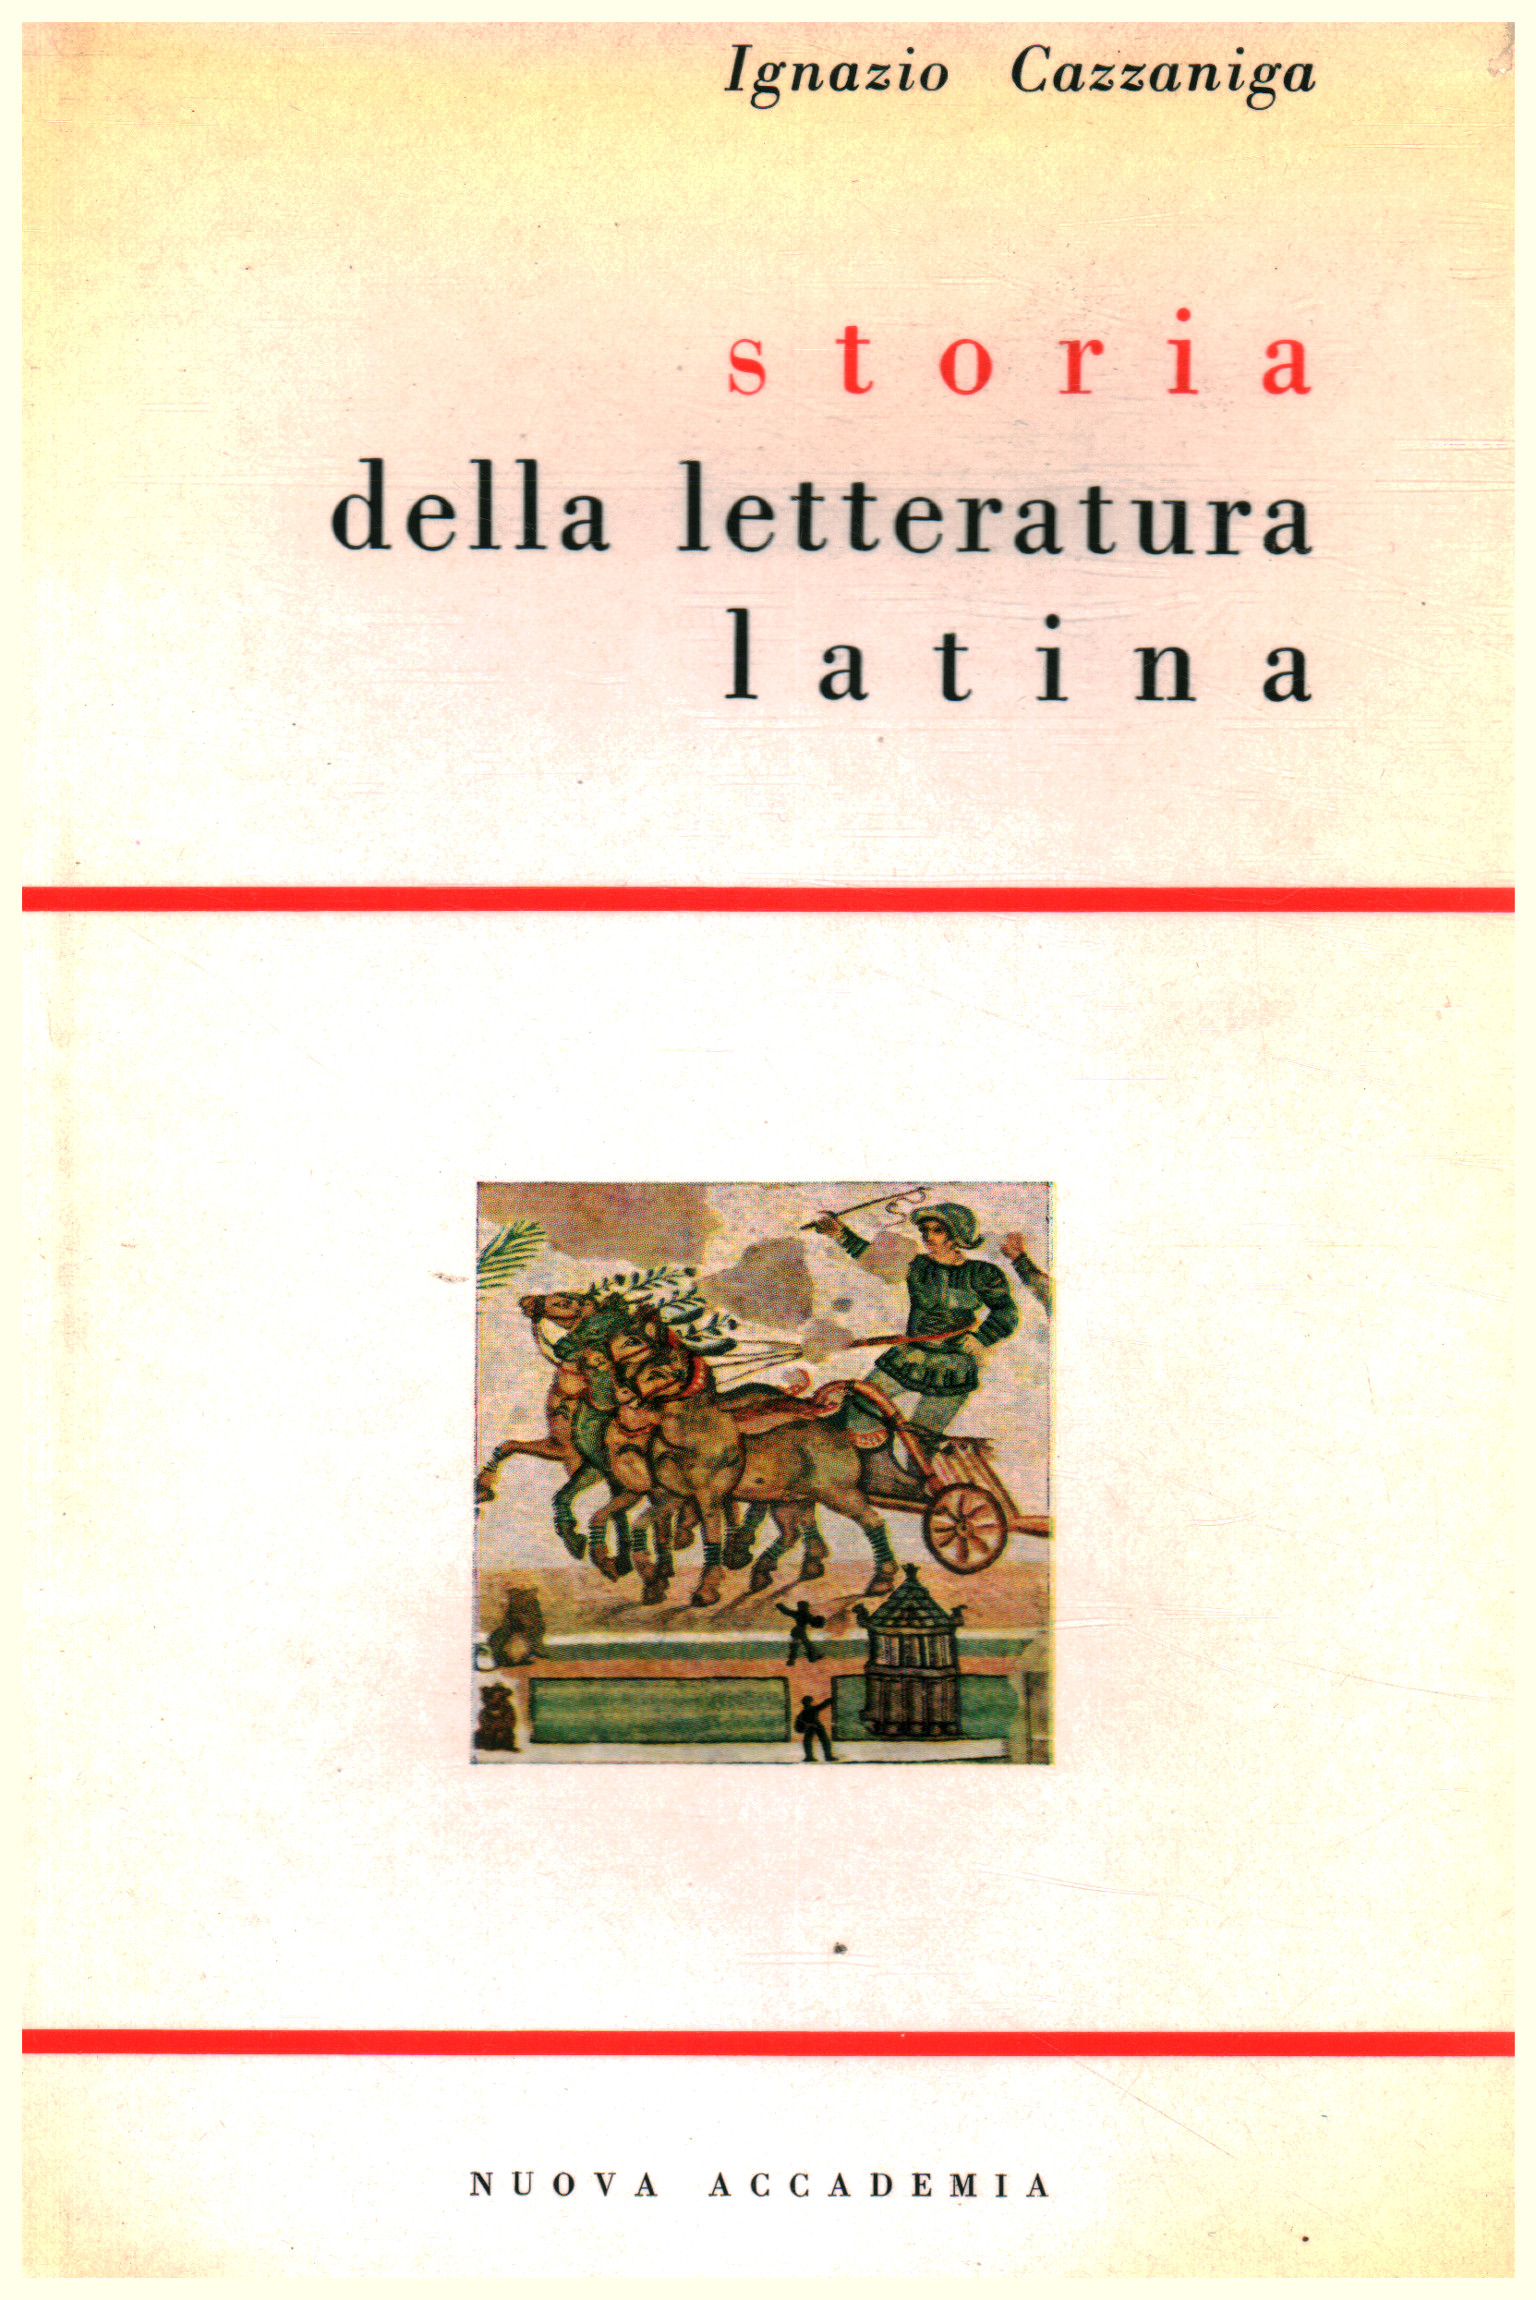 Ignazio Cazzaniga, usato, Storia della letteratura latina, Libreria, Saggi  di letteratura